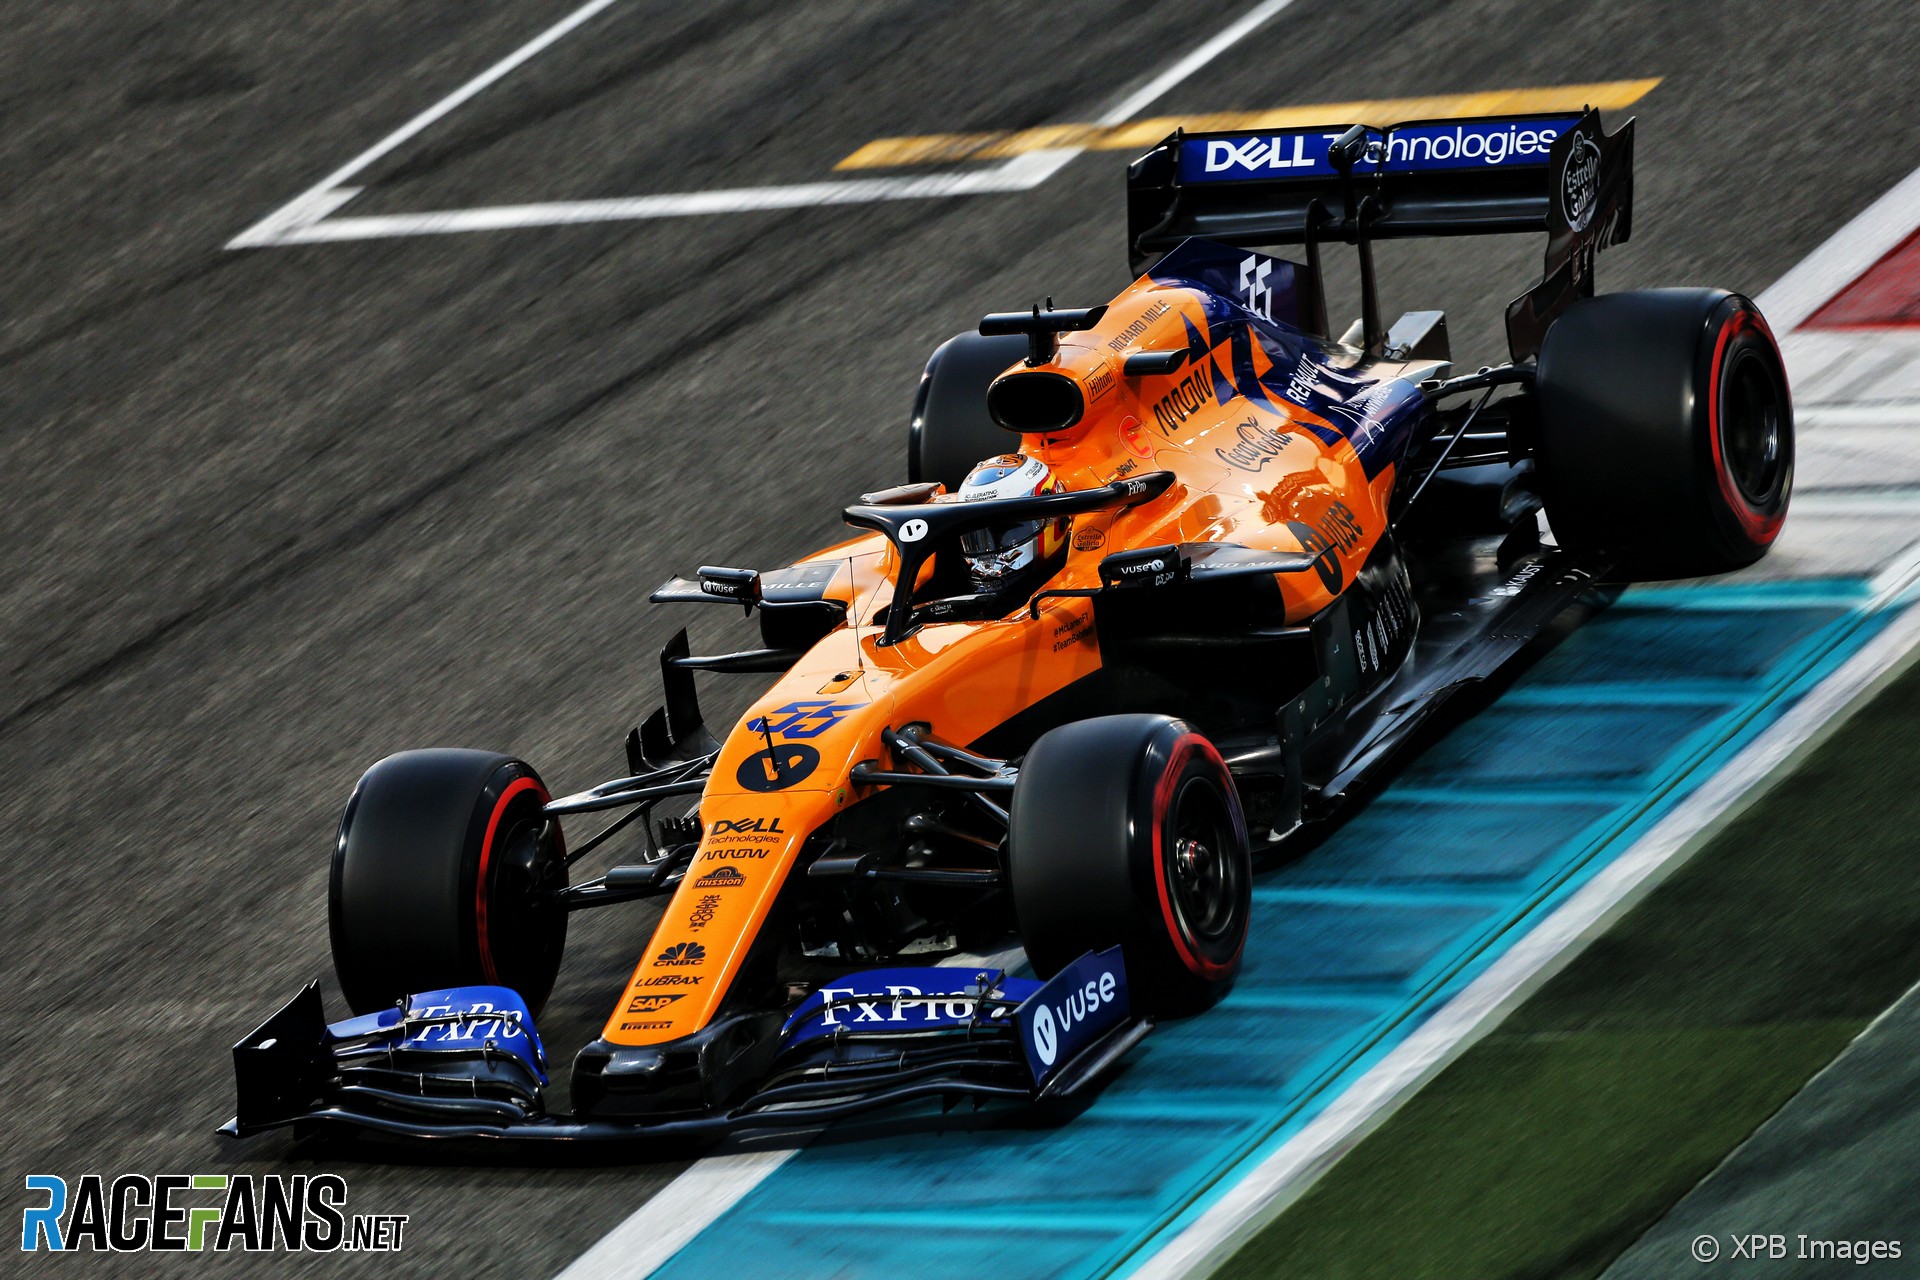 Carlos Sainz Jnr, McLaren, Yas Marina, 2019